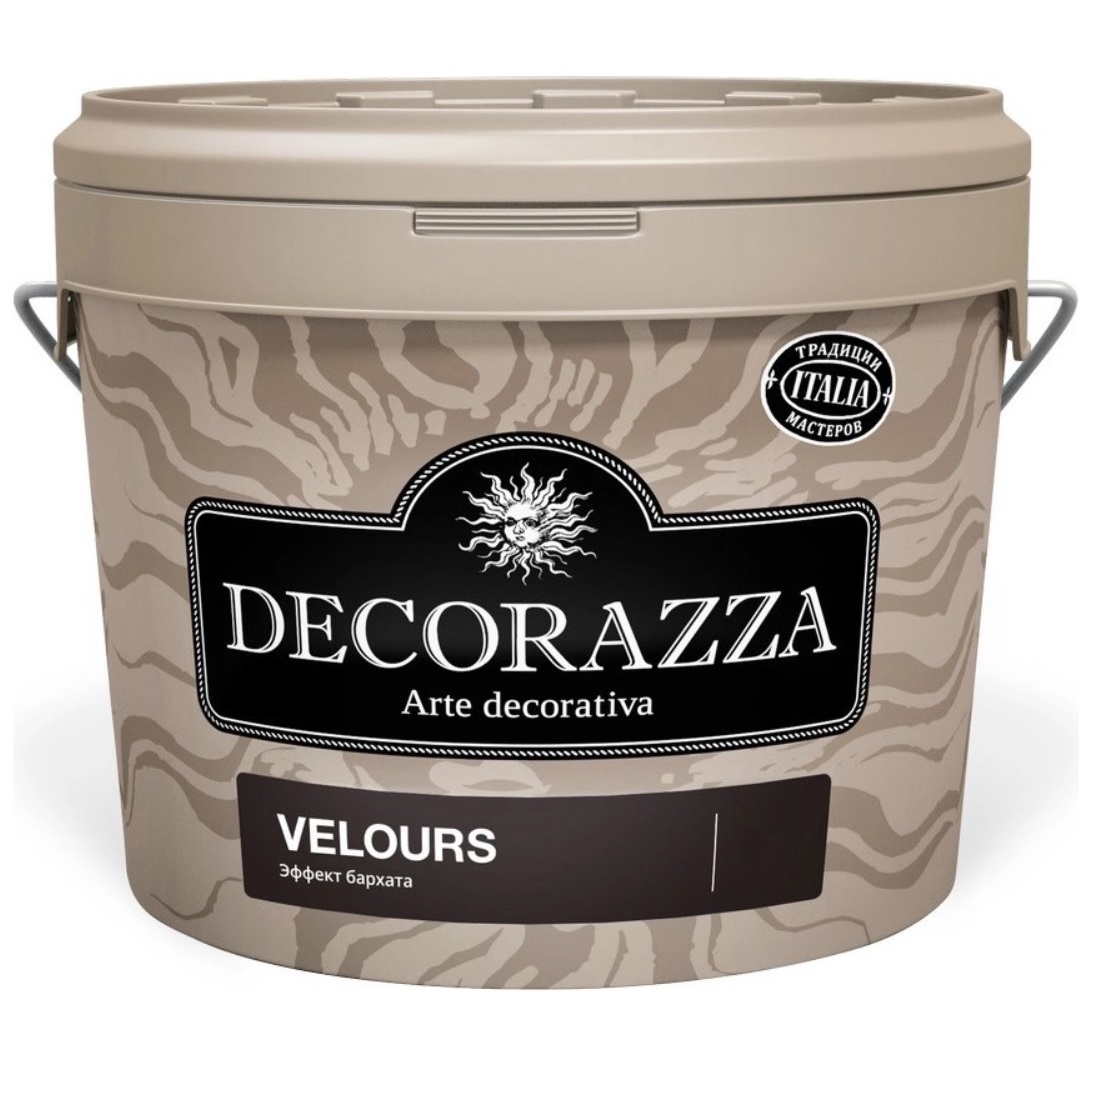 Покрытие декоративное с эффектом бархата Decorazza dz velours vl 001. 1.2 декоративное покрытие decorazza velours vl 001 нежный бархат 6 кг